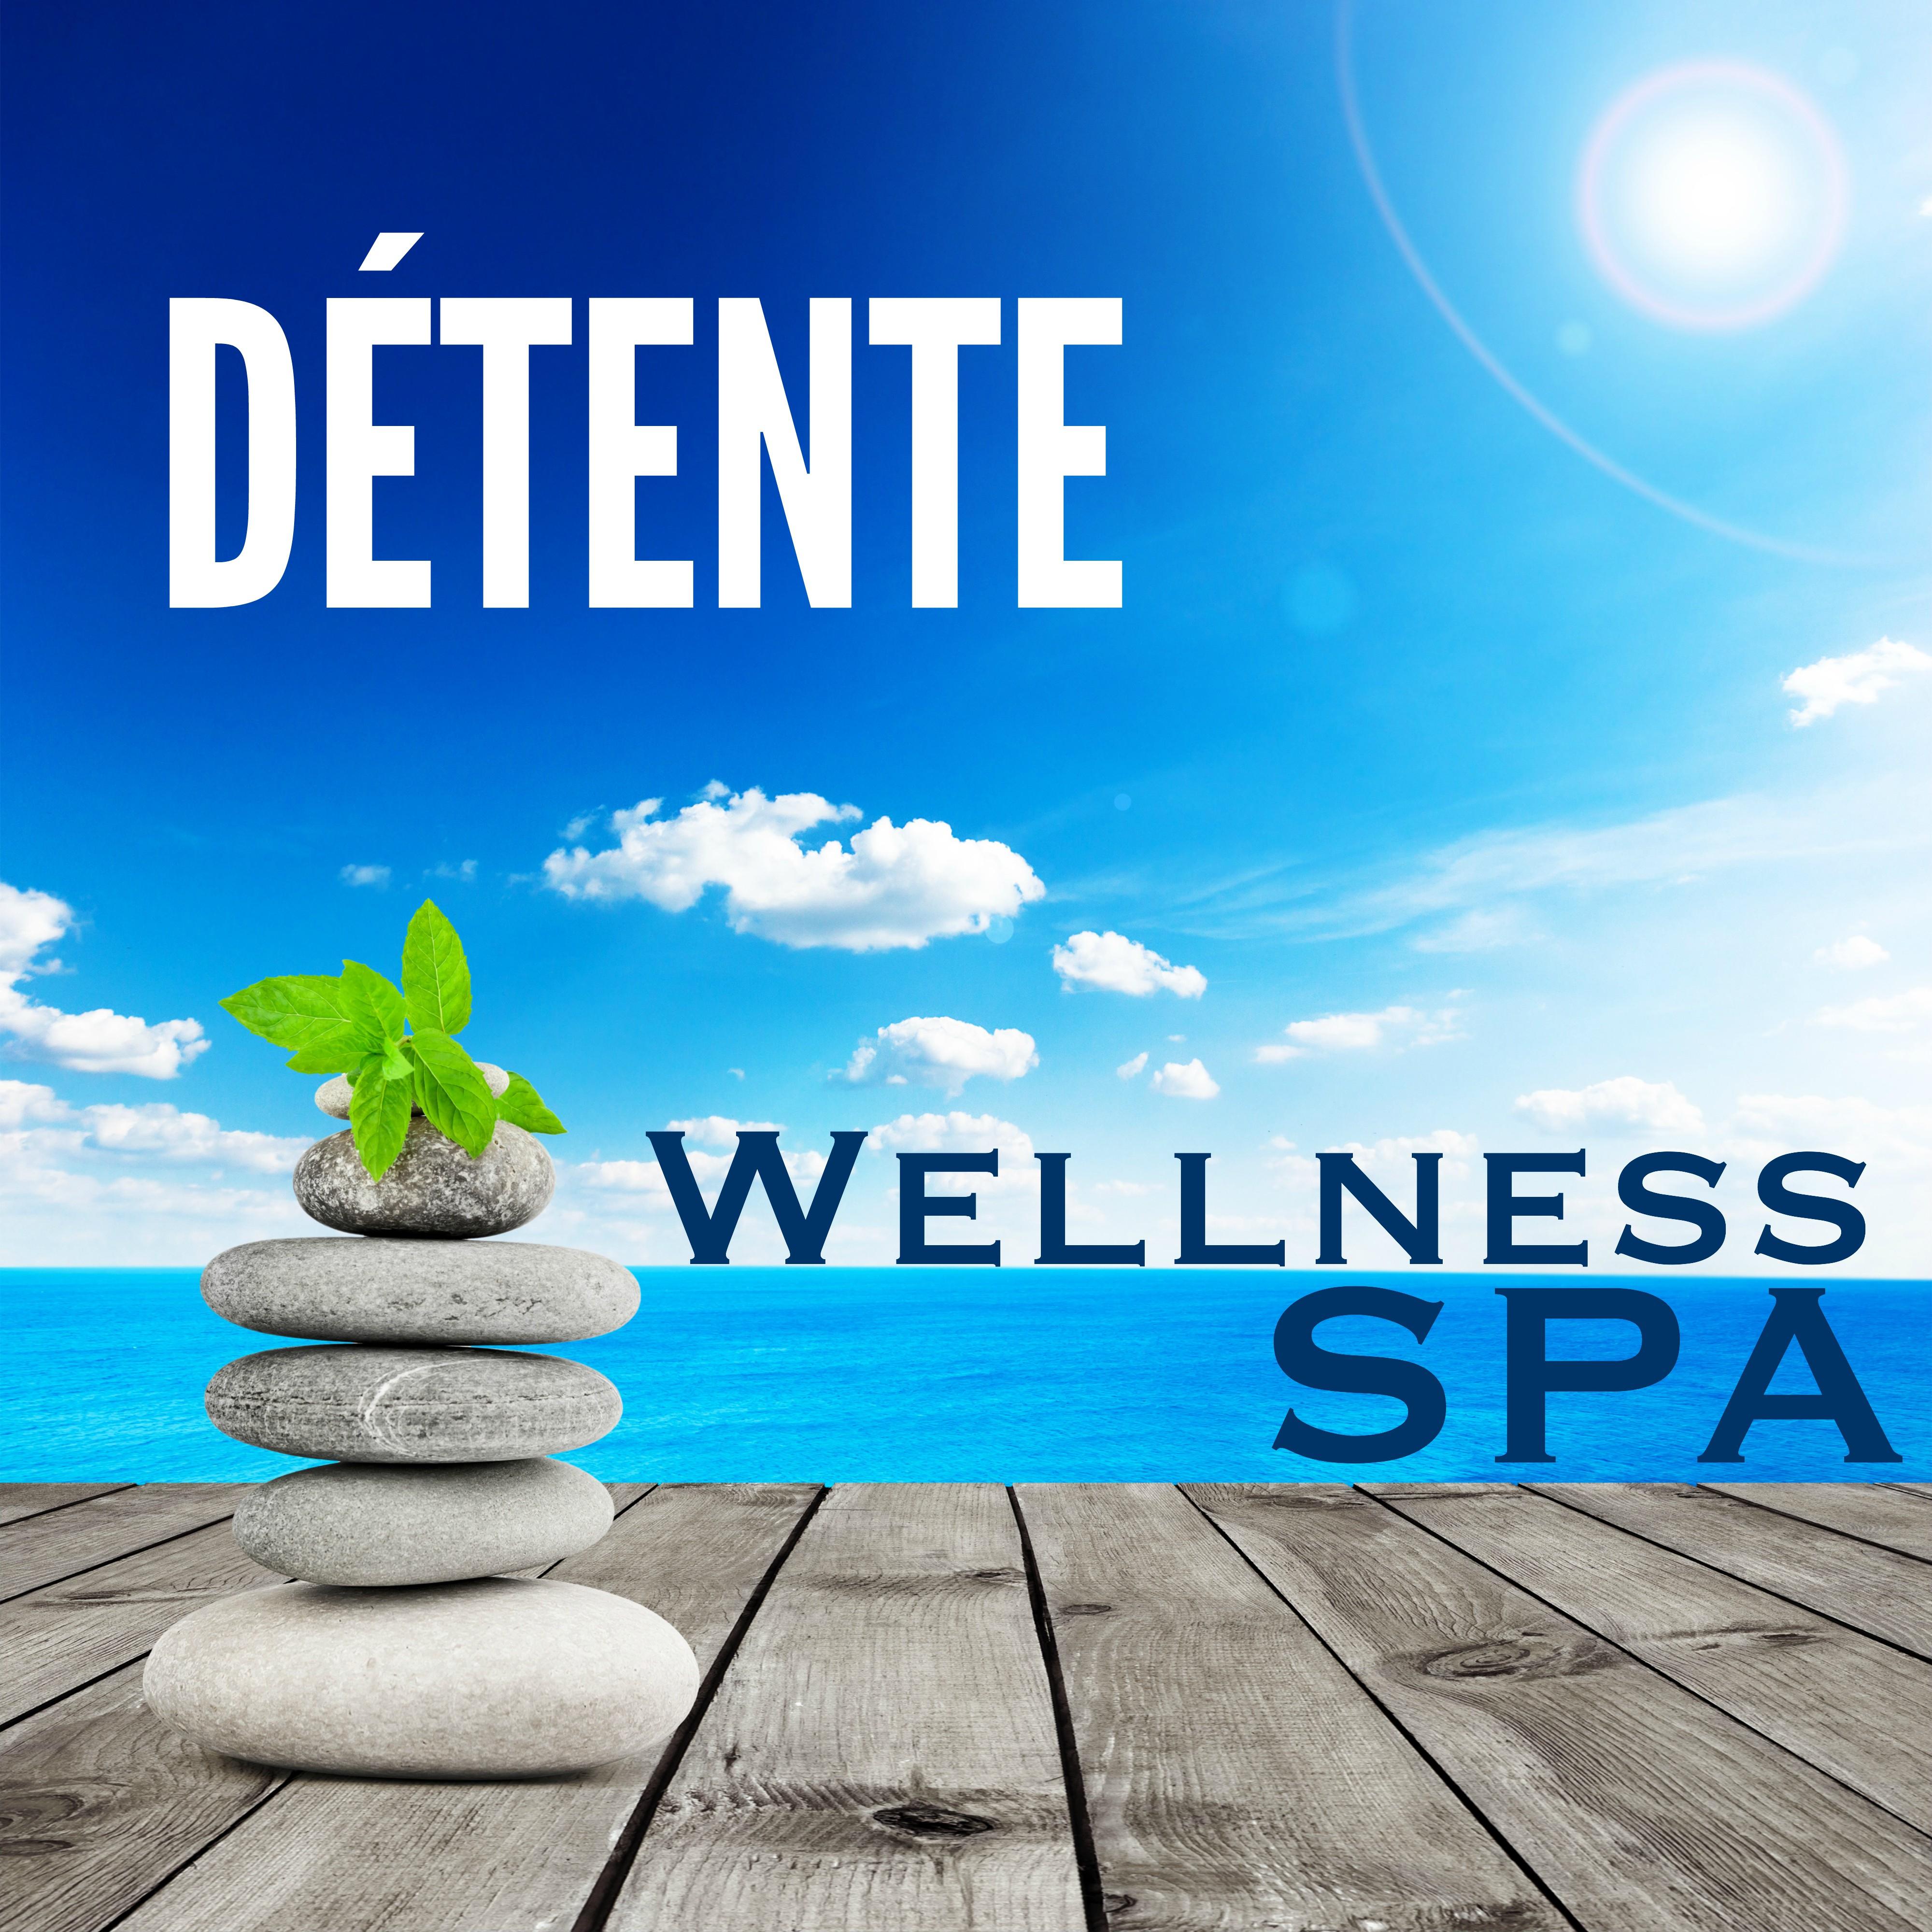 De tente  Wellness Spa: Musique Douce pour Relaxation et Massage au Spa